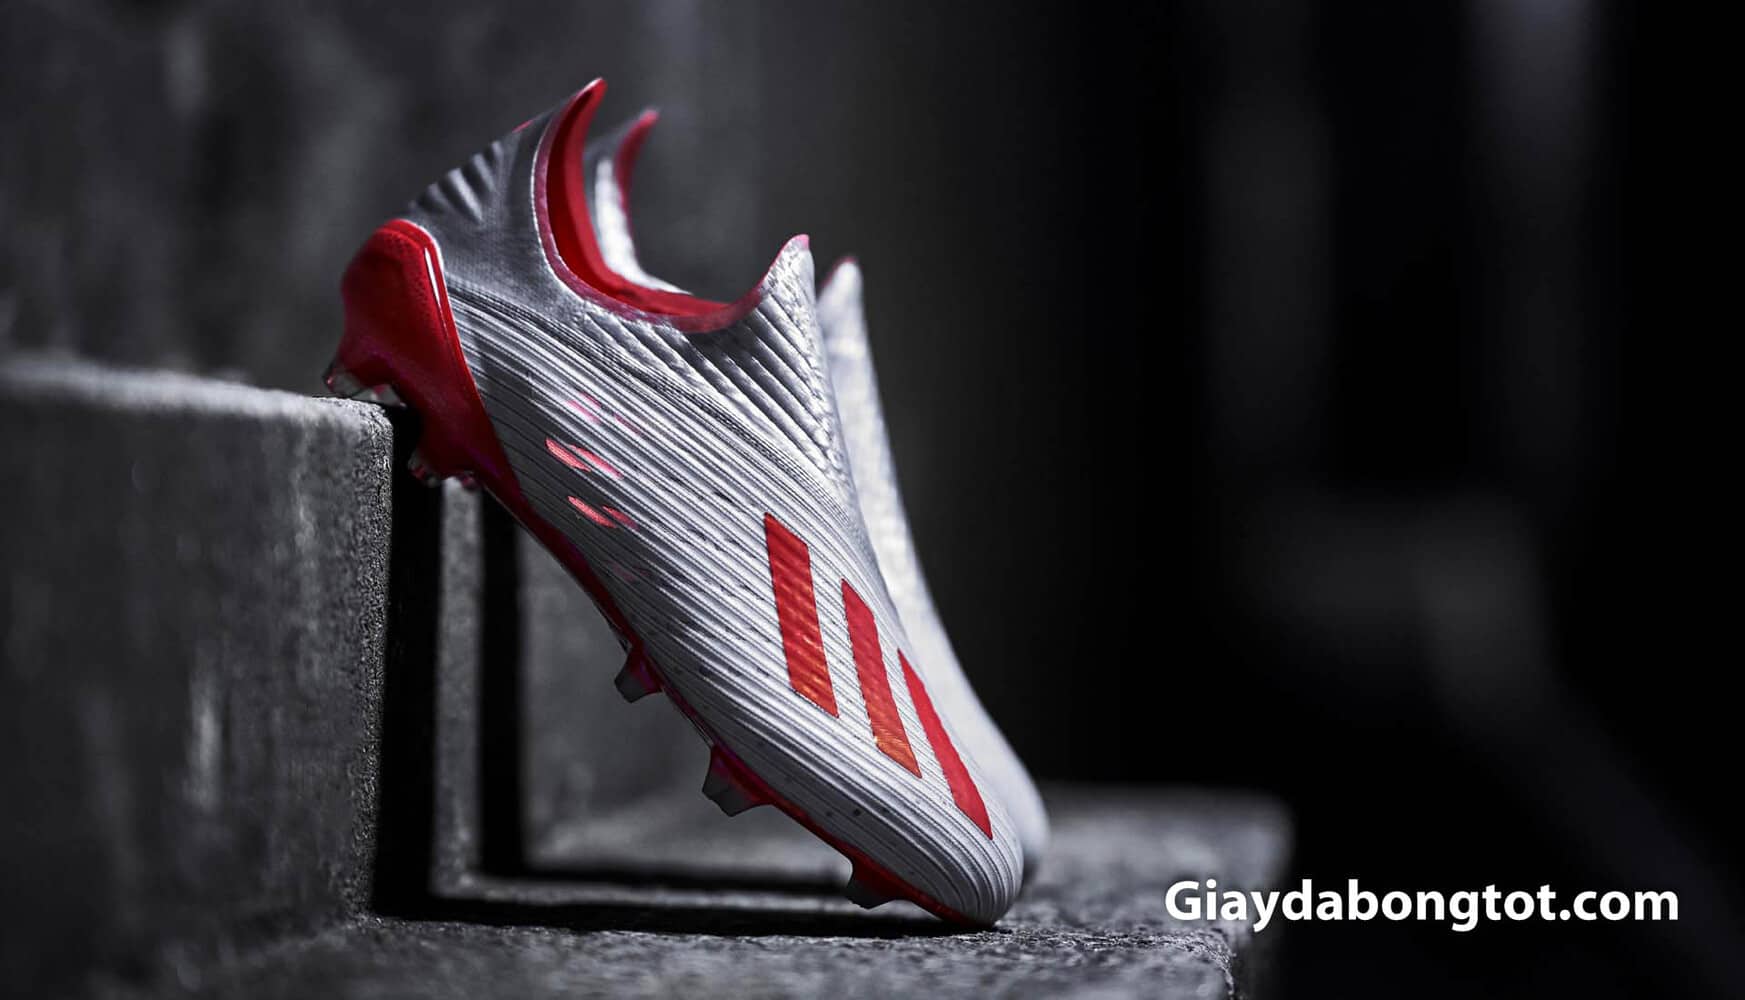 Thế hệ mới giày đá bóng trợ tốc Adidas X19+ được ra mắt tháng 5, 2019 vừa qua